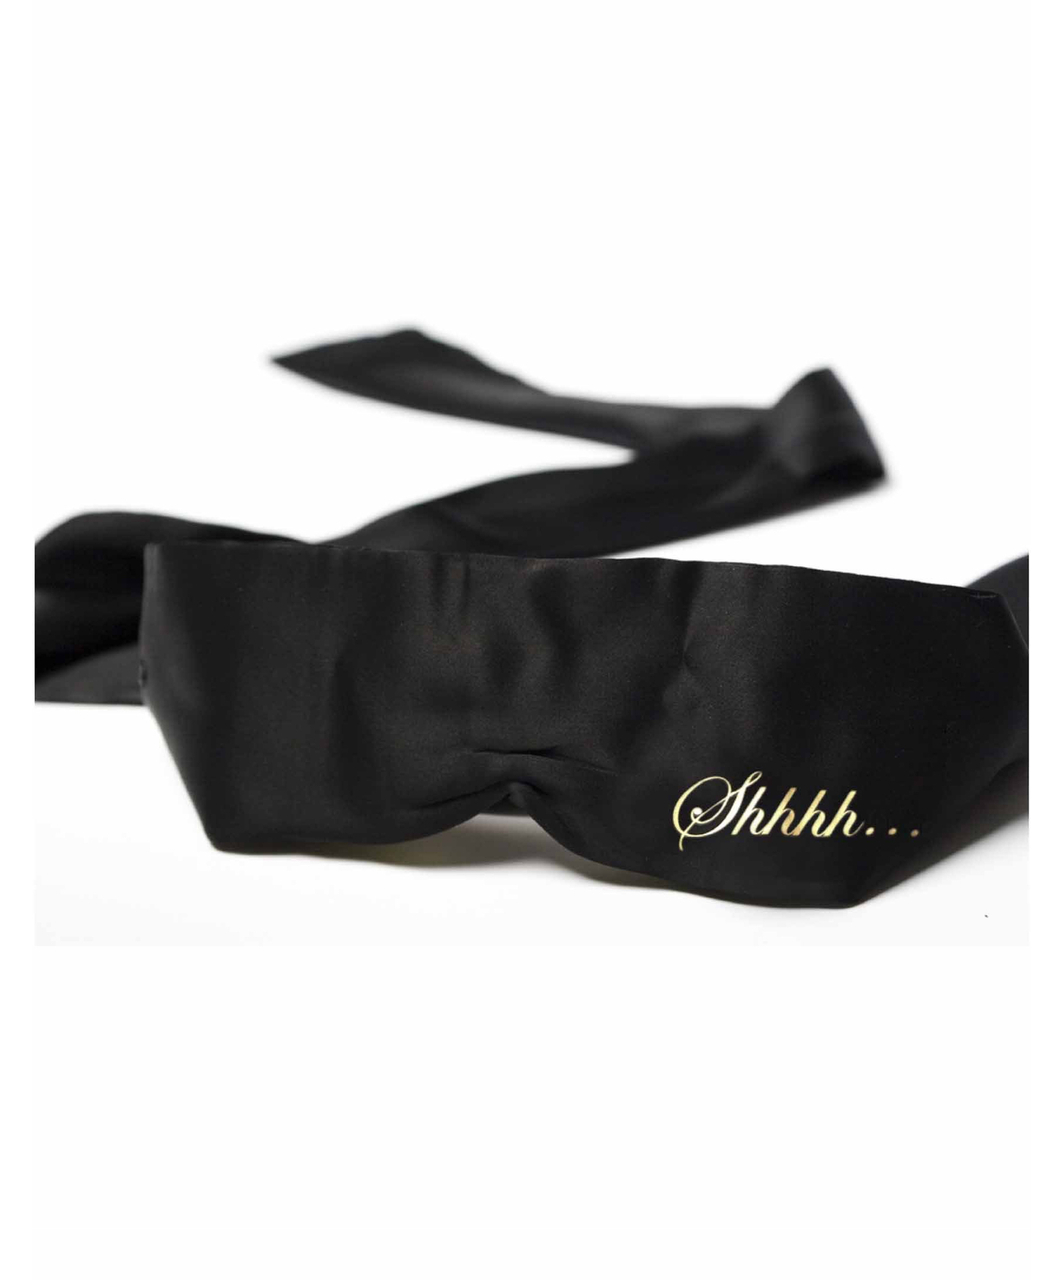 Bijoux Indiscrets black satin blindfold